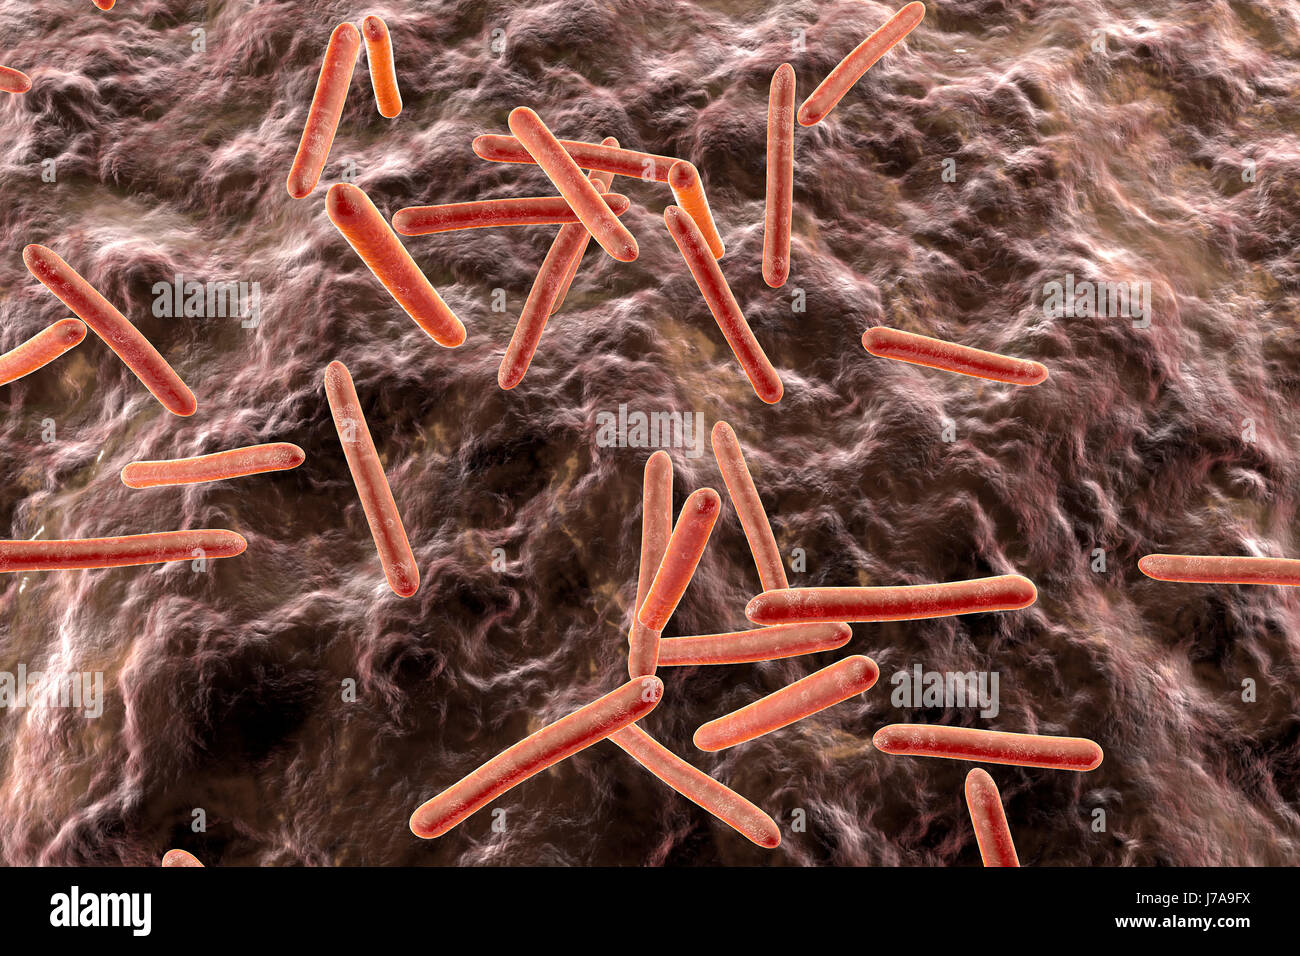 Les bactéries de la tuberculose dans un organisme, 3D Rendering Banque D'Images